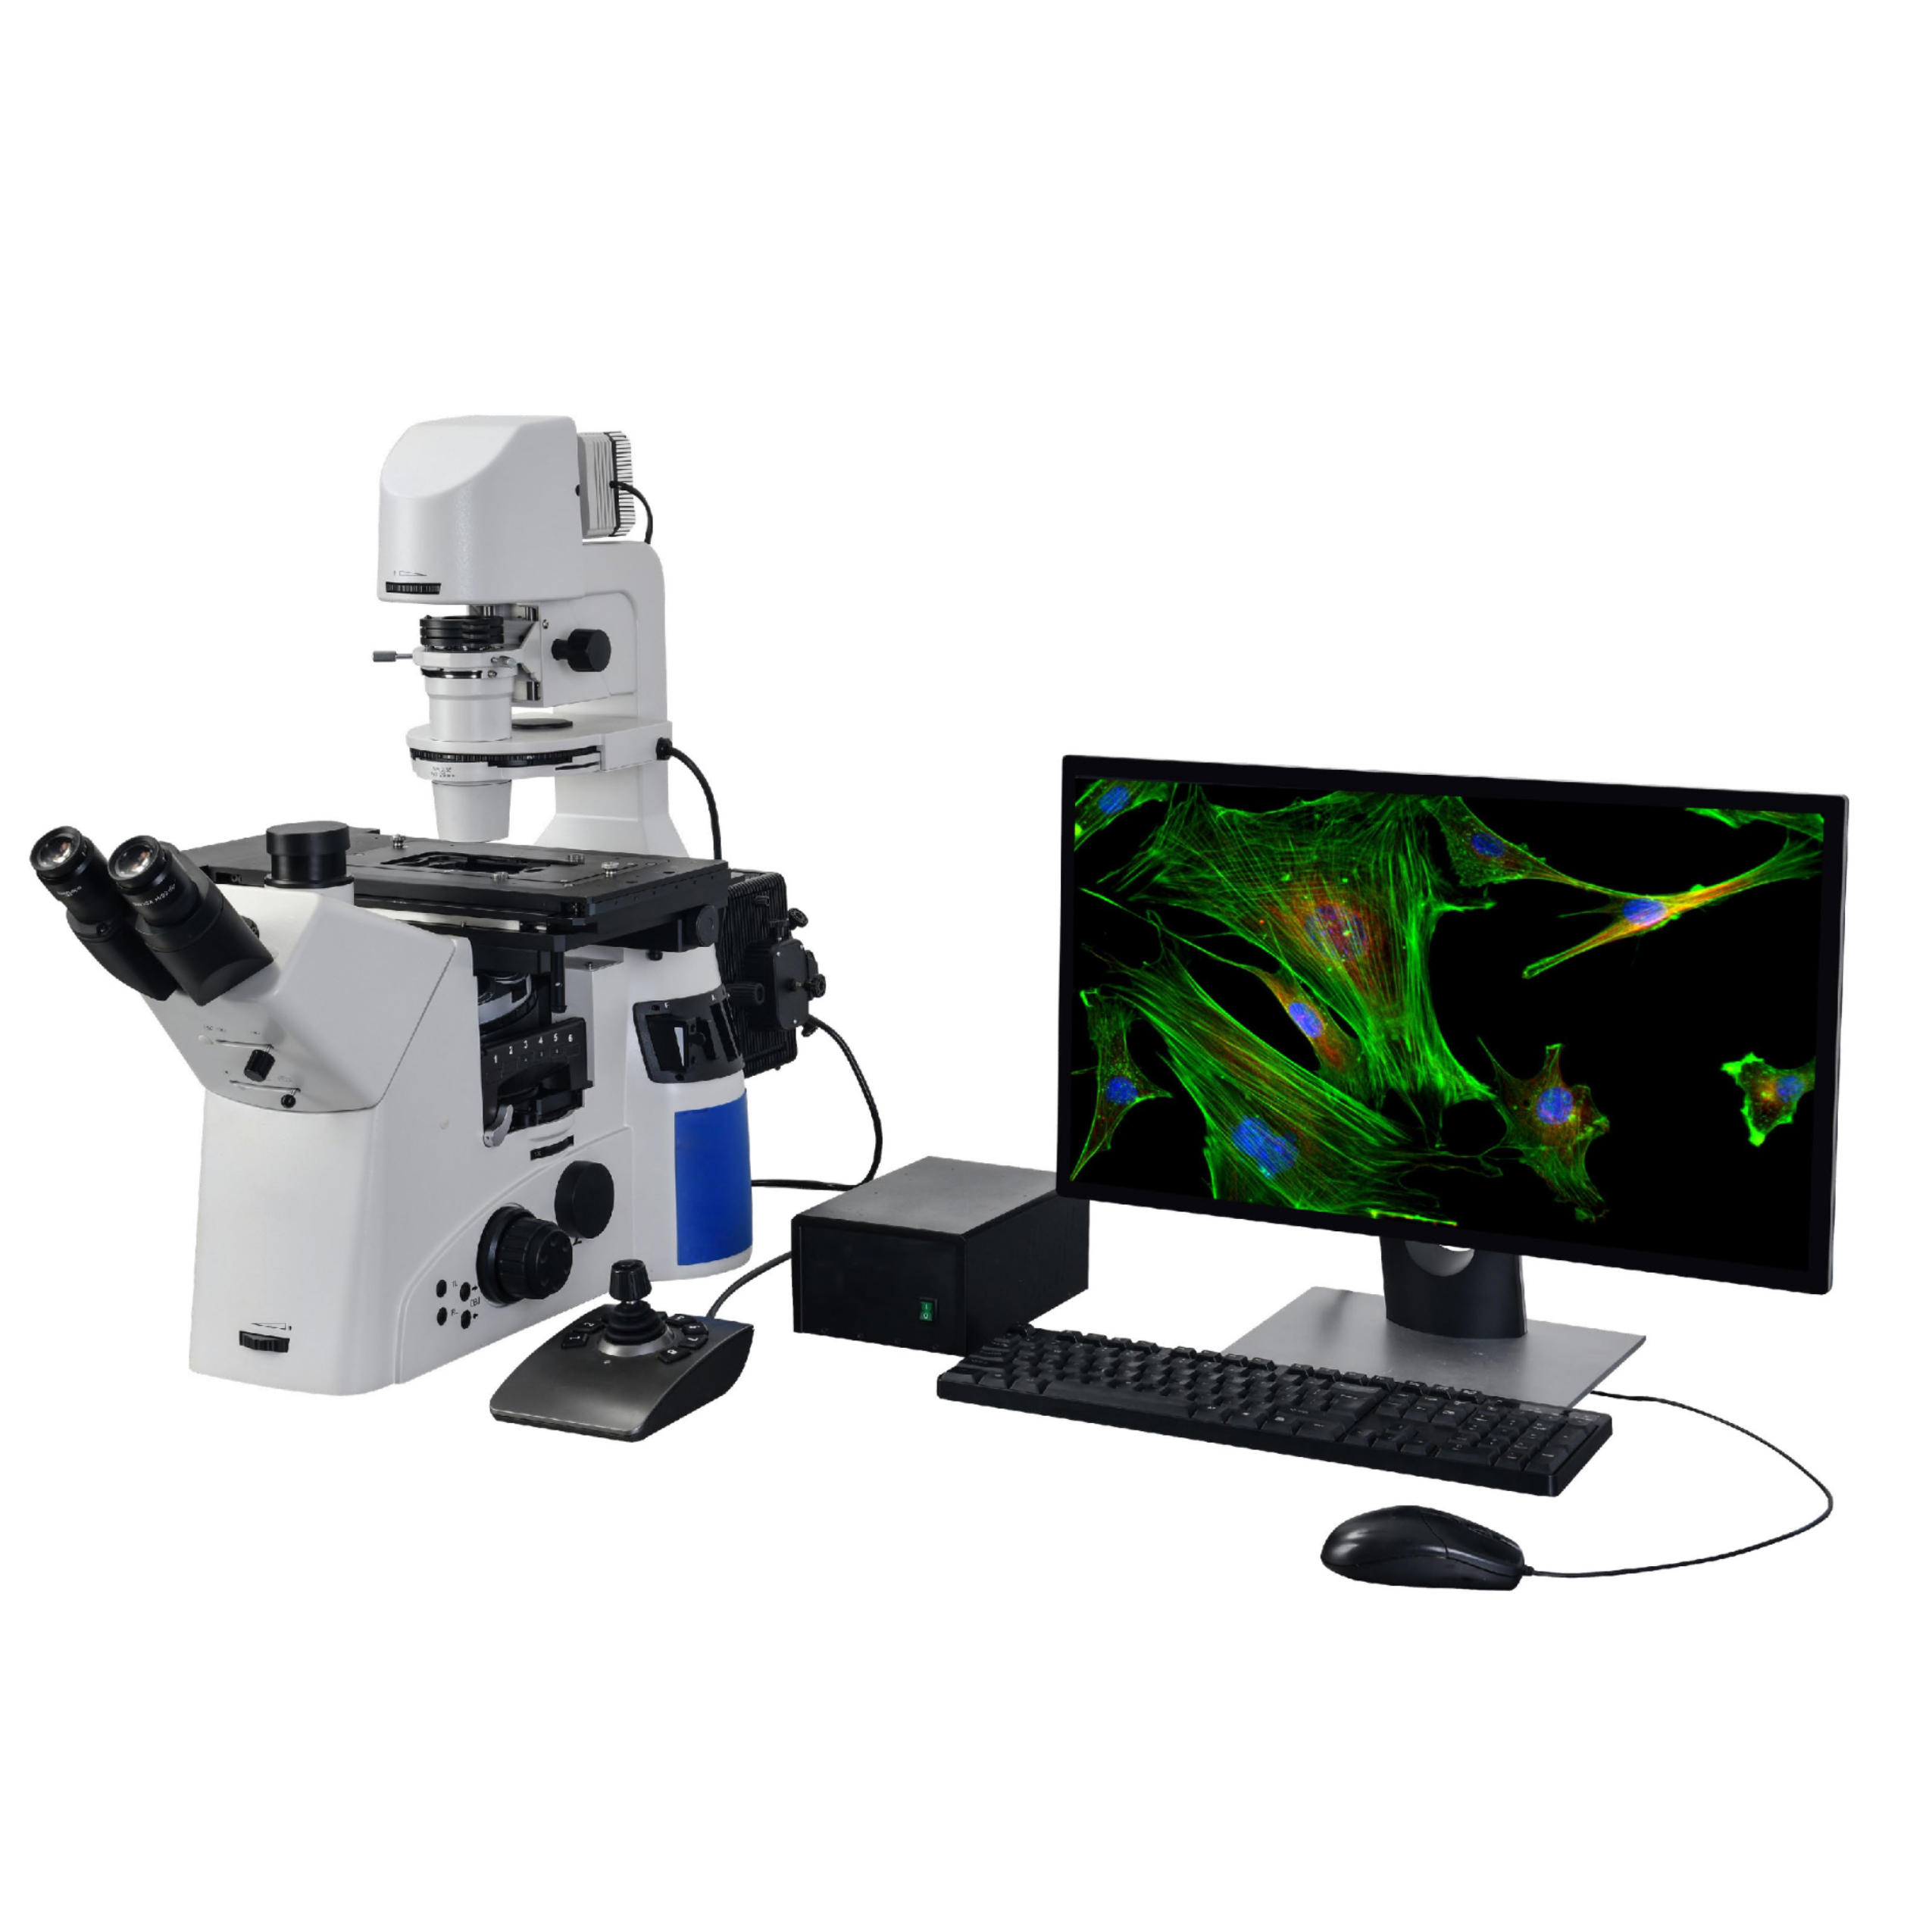 科研级全自动倒置生物荧光显微镜LK-YG92